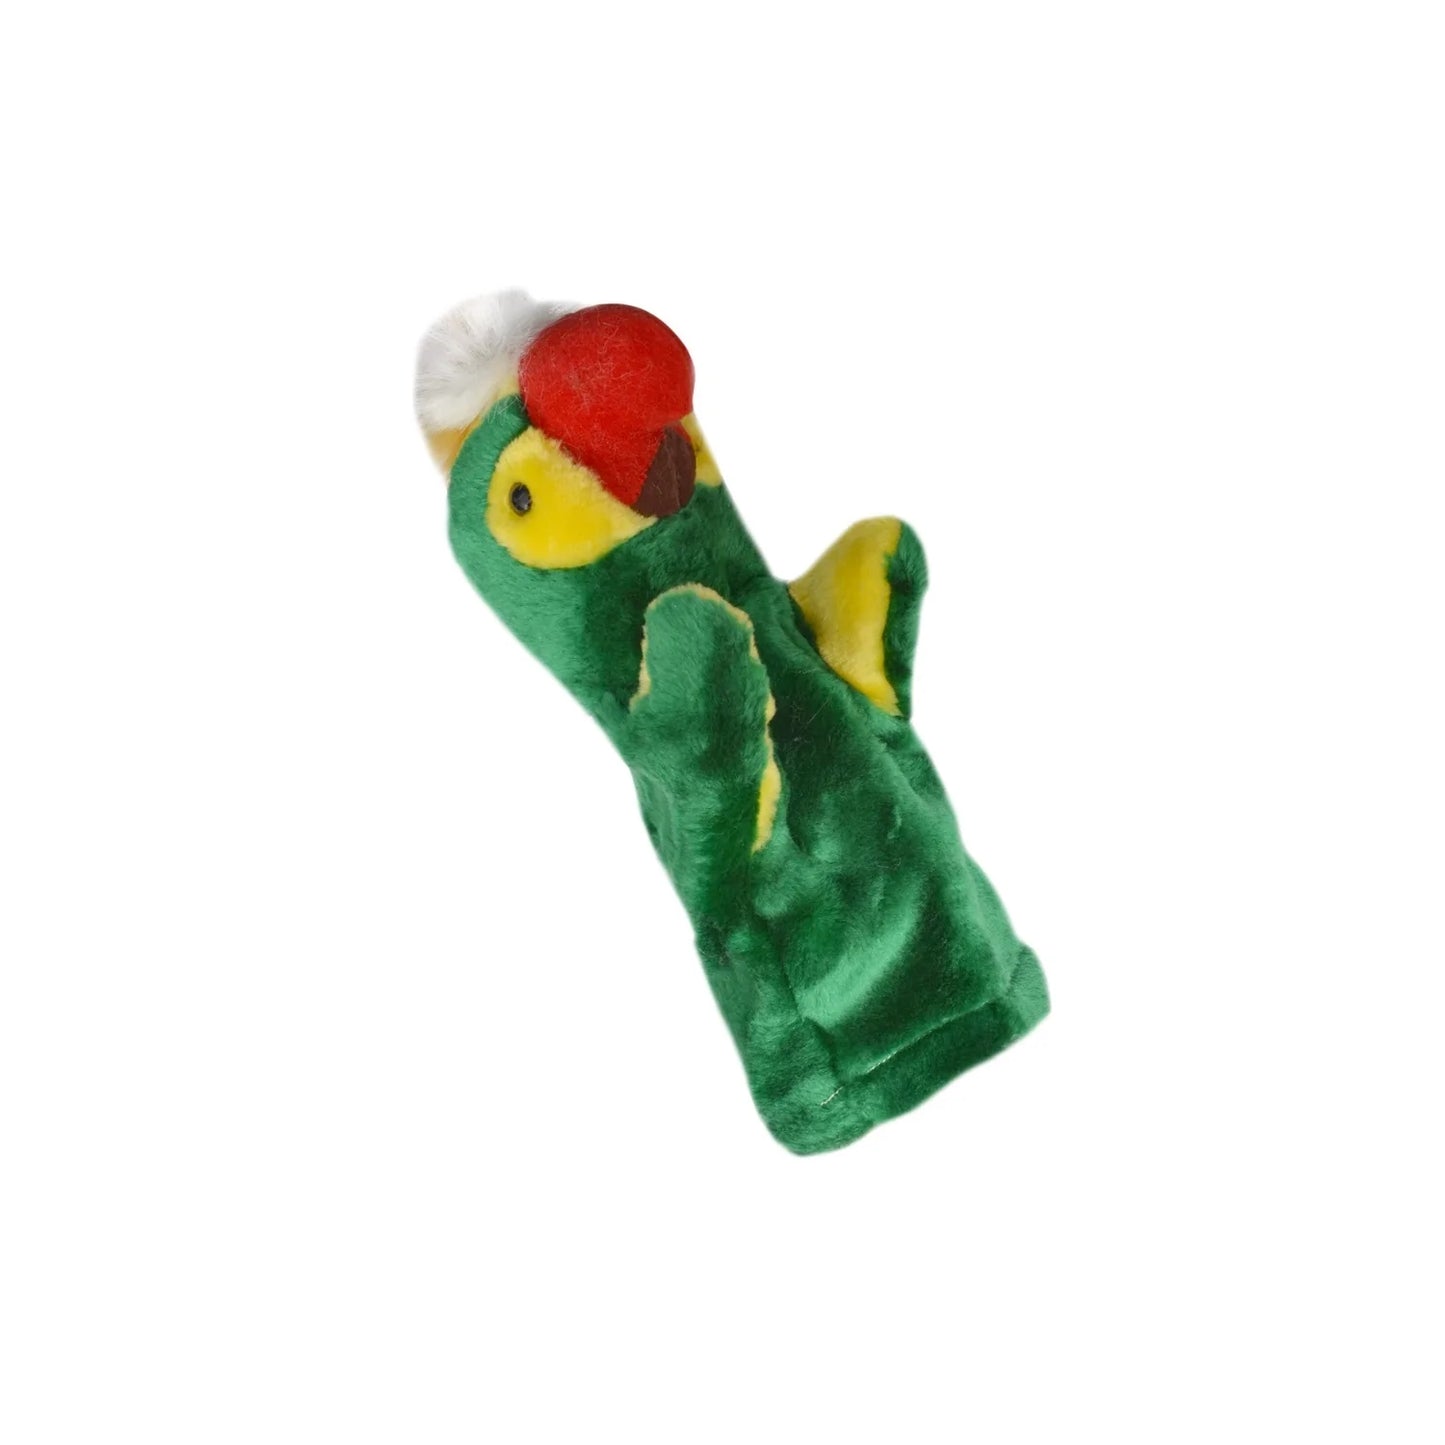 Parrot Hand Glove Puppet - Green